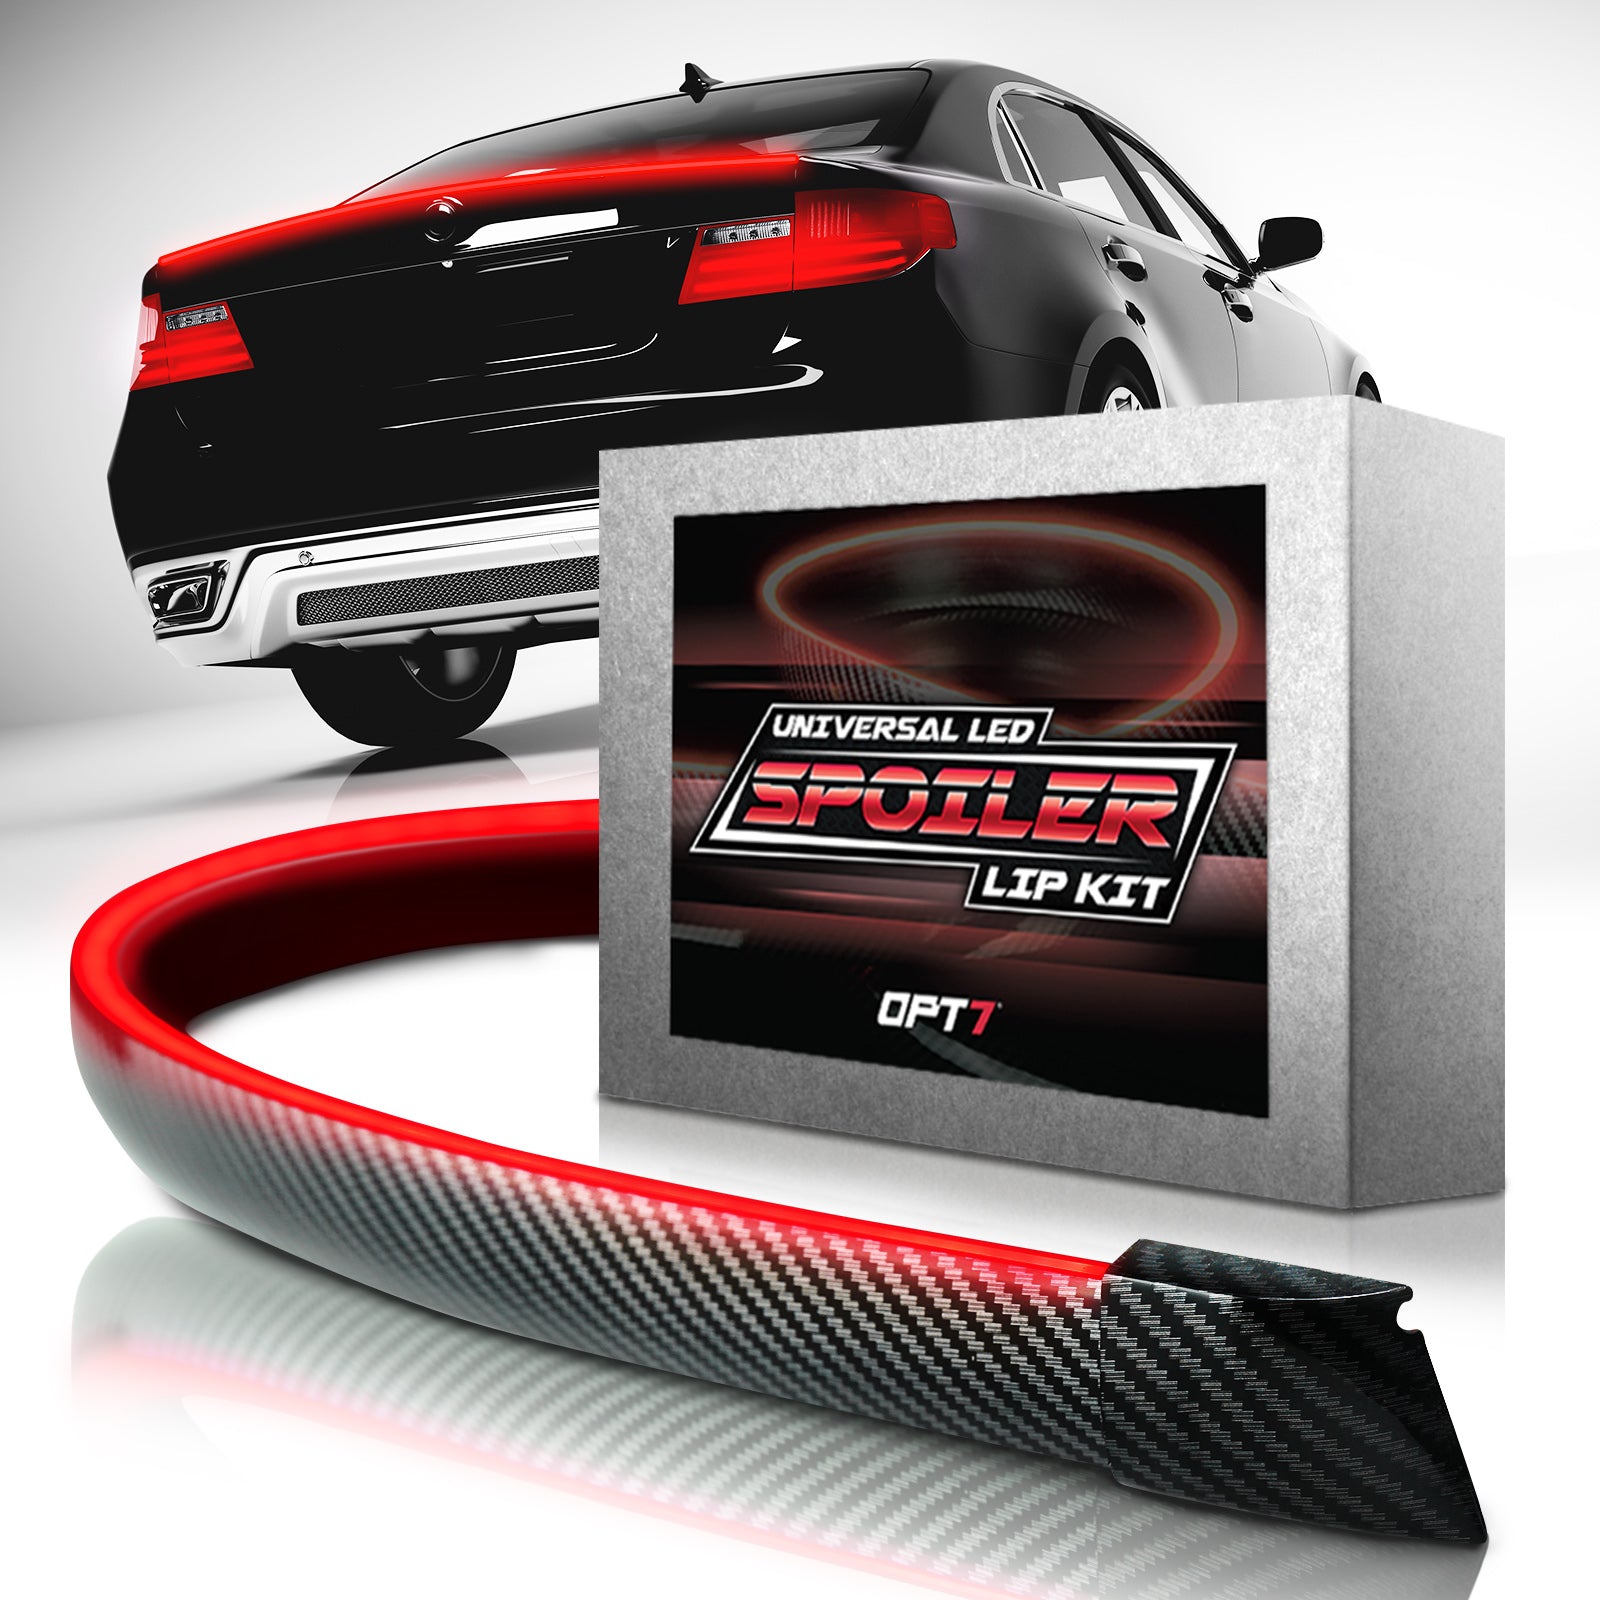 OPT7 Universal LED Rear Spoiler Lip Kit (3.9ft) for Car Trunk